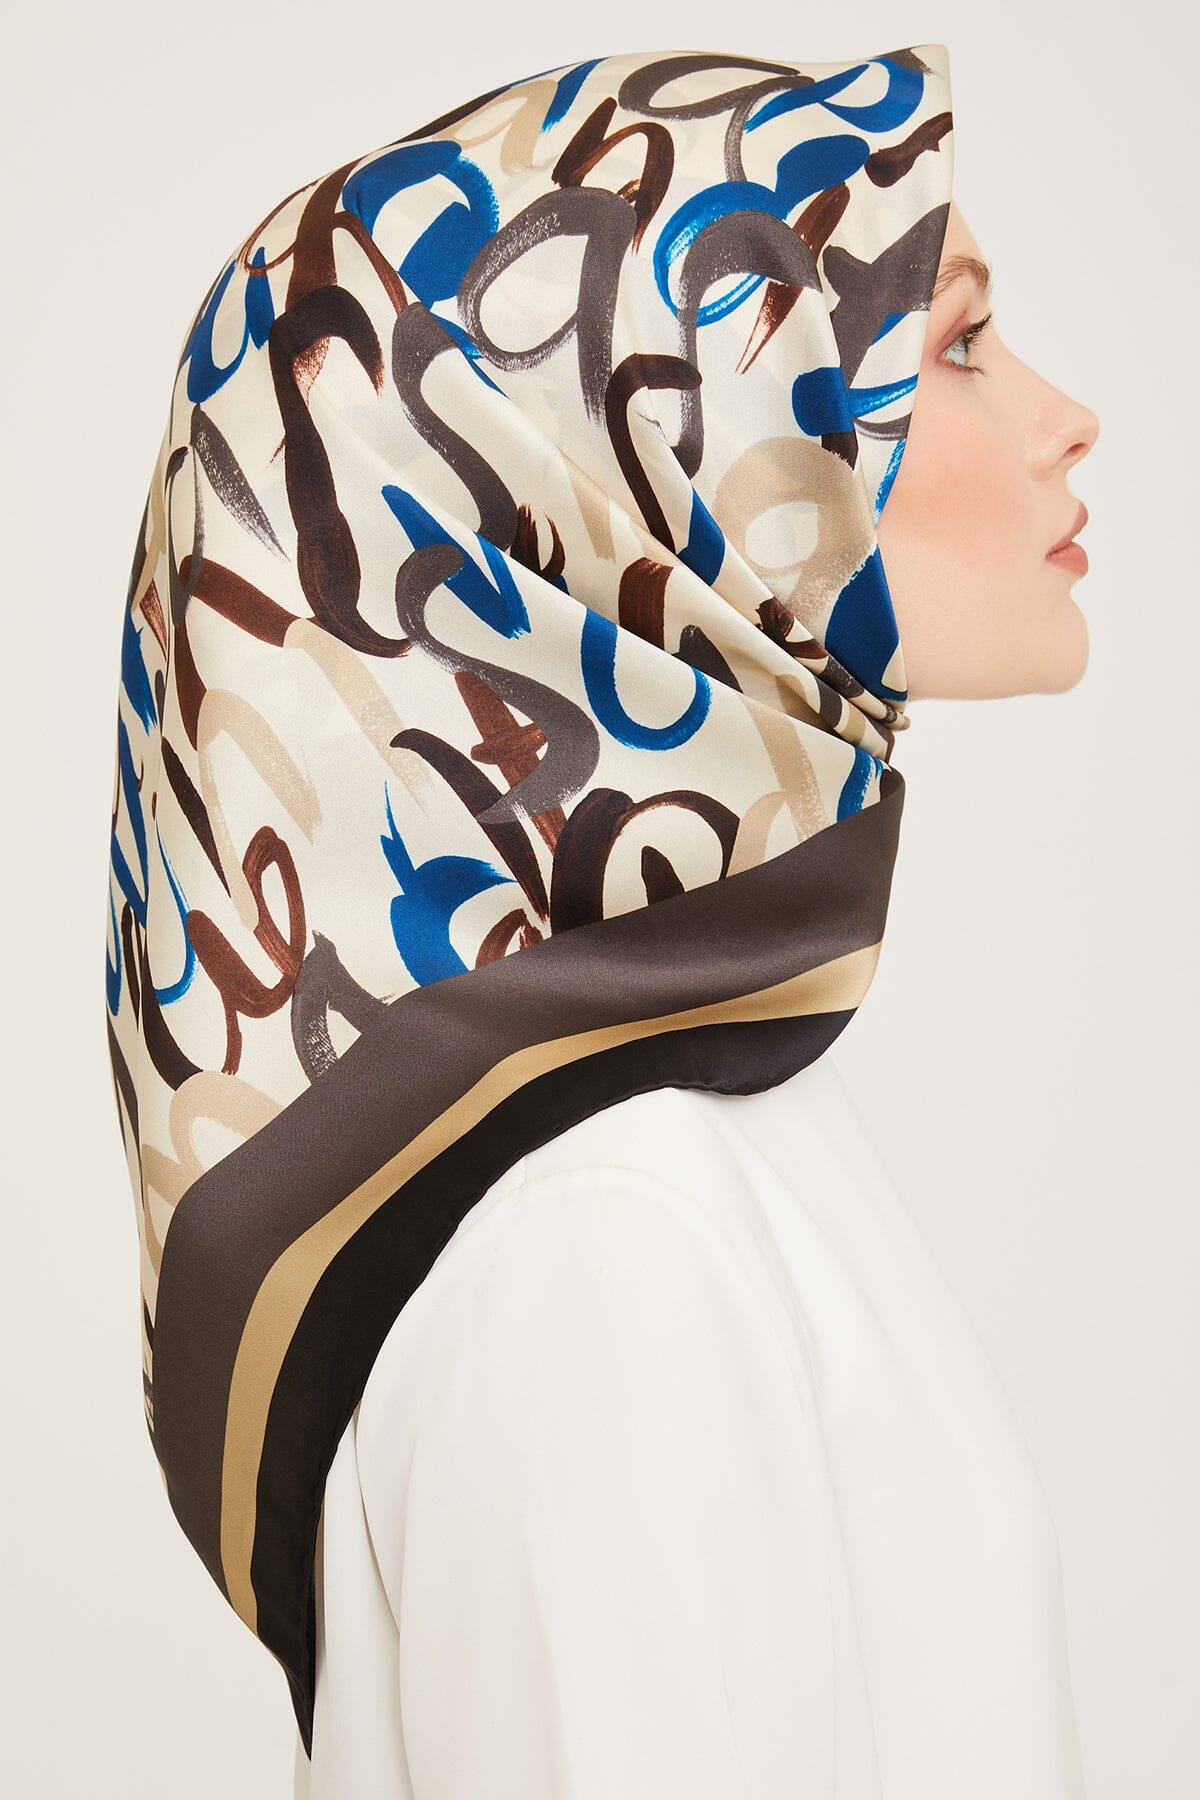 Armine Nudle Designer Silk Scarf #39 Silk Hijabs,Armine Armine 